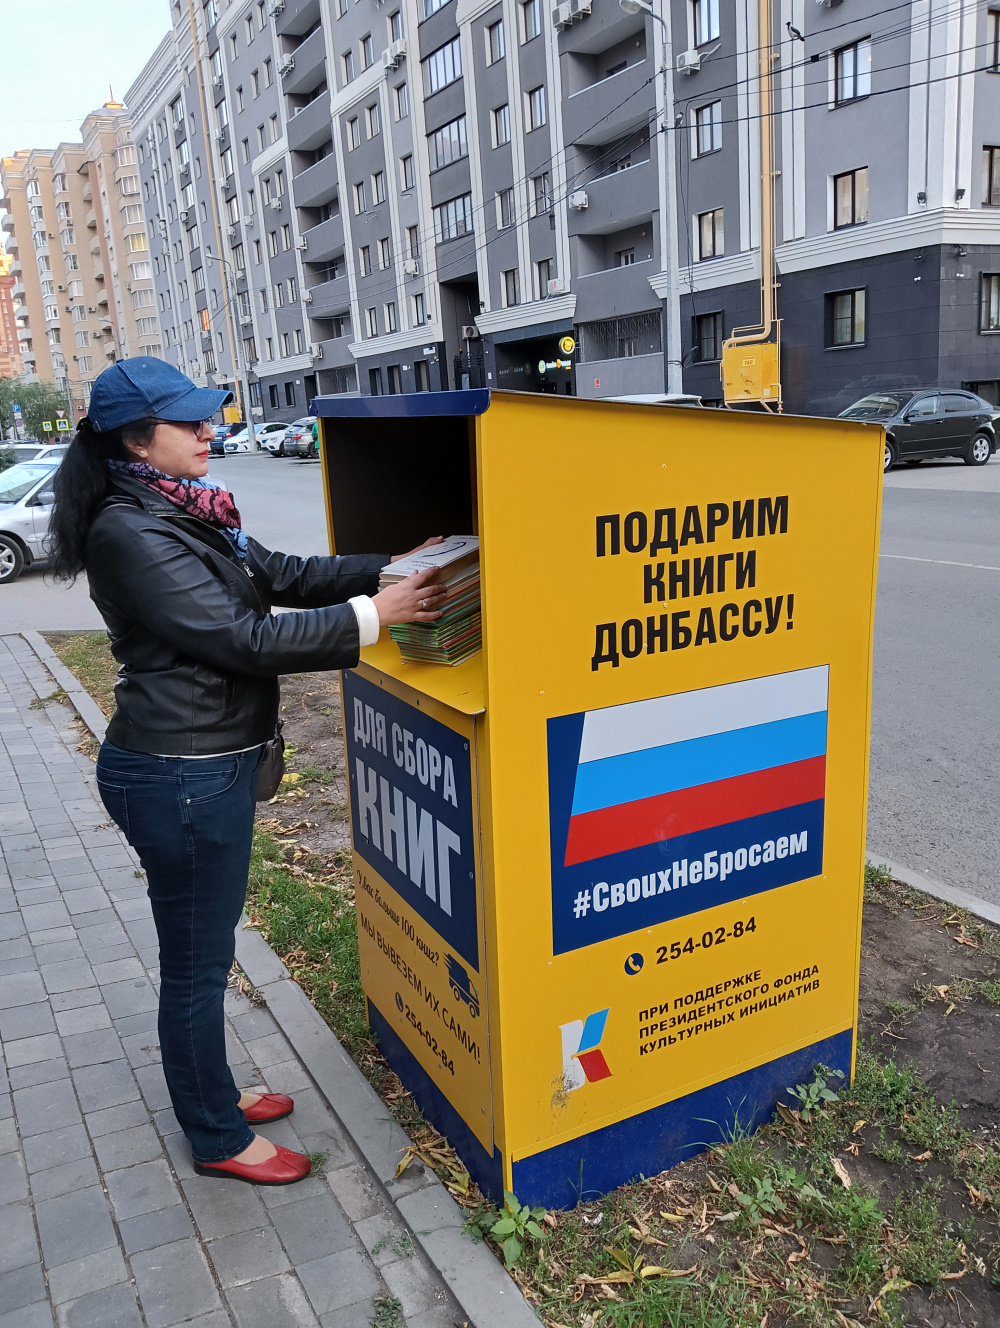 Сотрудники Управления Росреестра по Самарской области присоединились к проекту «Подарим книги Донбассу». 